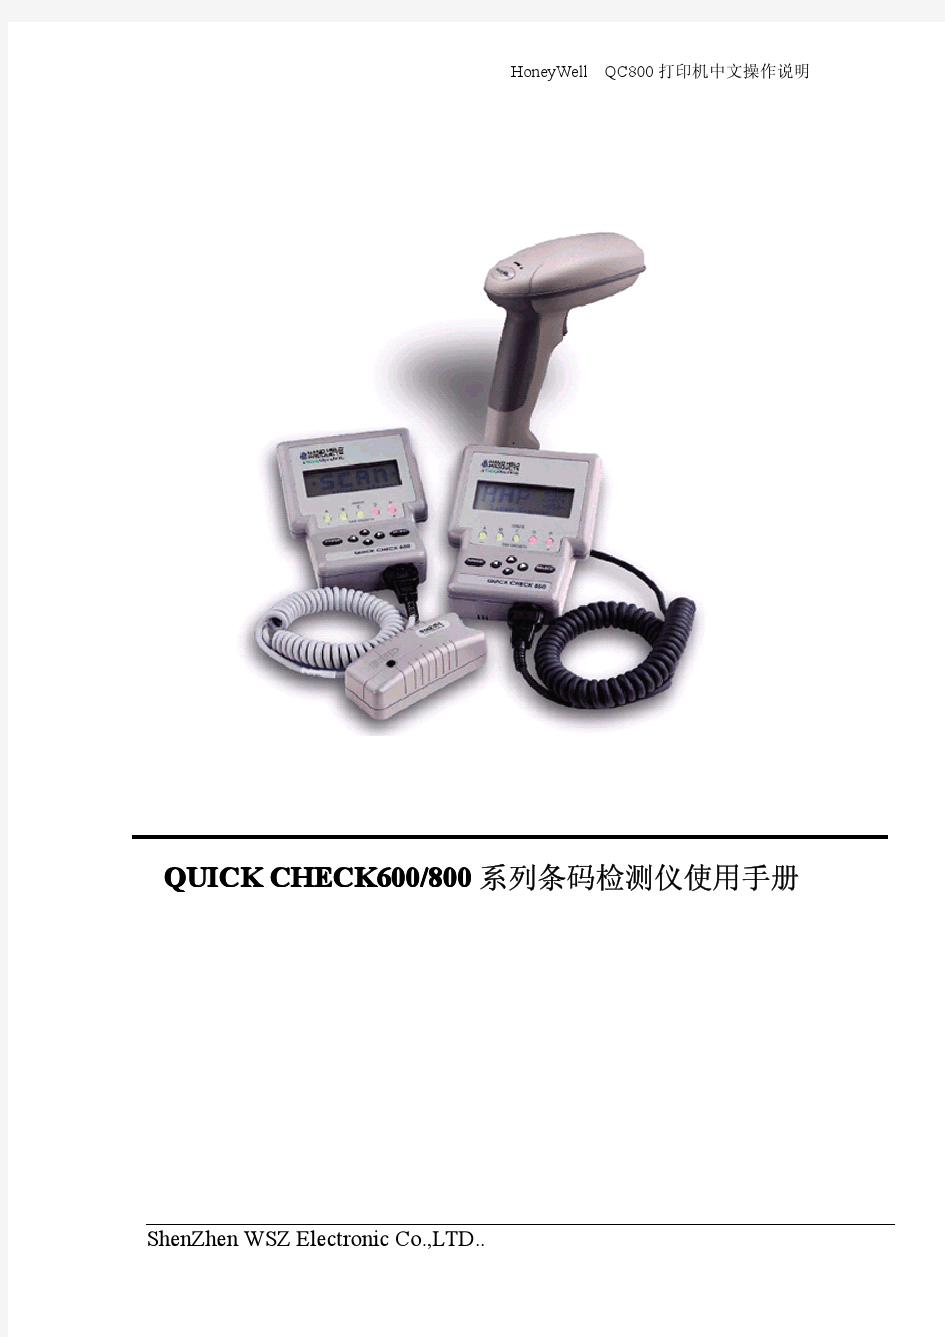 Quick Check 600&800系列条码检测仪使用手册2